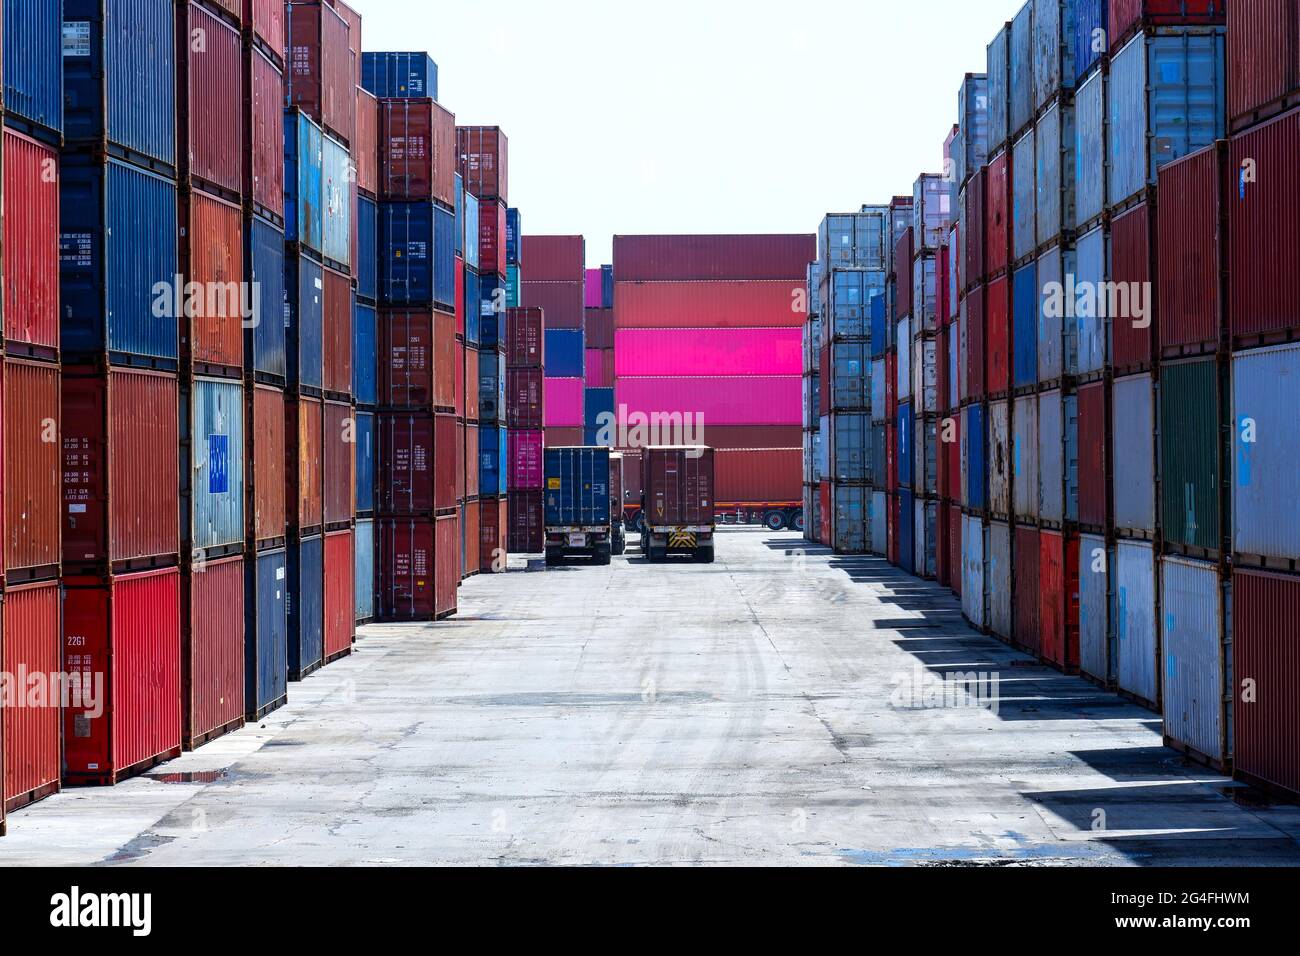 Containerflotte für den Import/Export von Fracht in die Werft Seefracht der Container Shipping Industry Sea Freight Distribution Yard Trade und Transporta Stockfoto